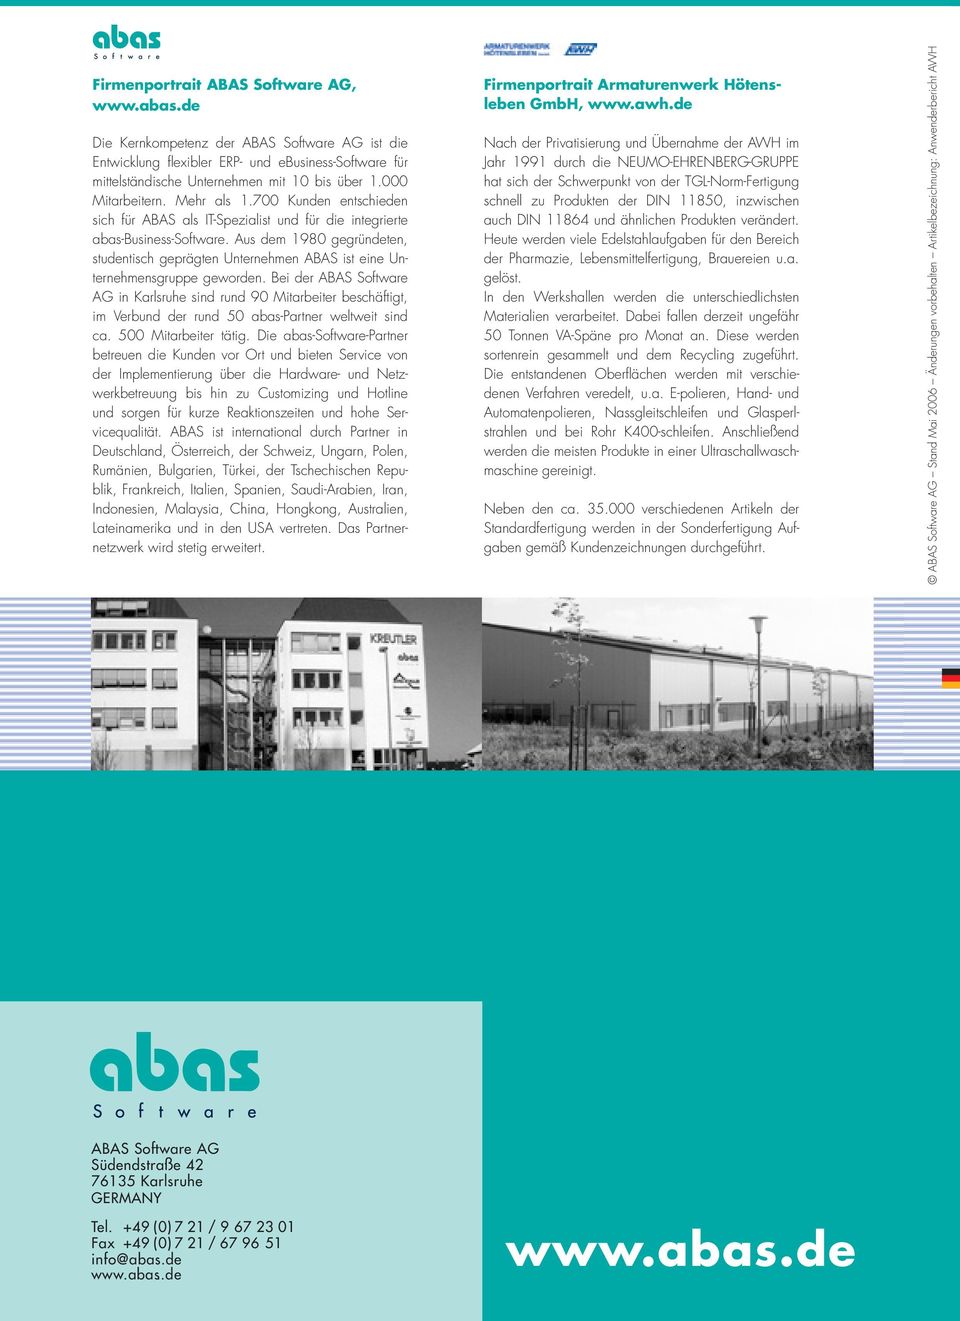 Aus dem 1980 gegründeten, studentisch geprägten Unternehmen ABAS ist eine Unternehmensgruppe geworden.